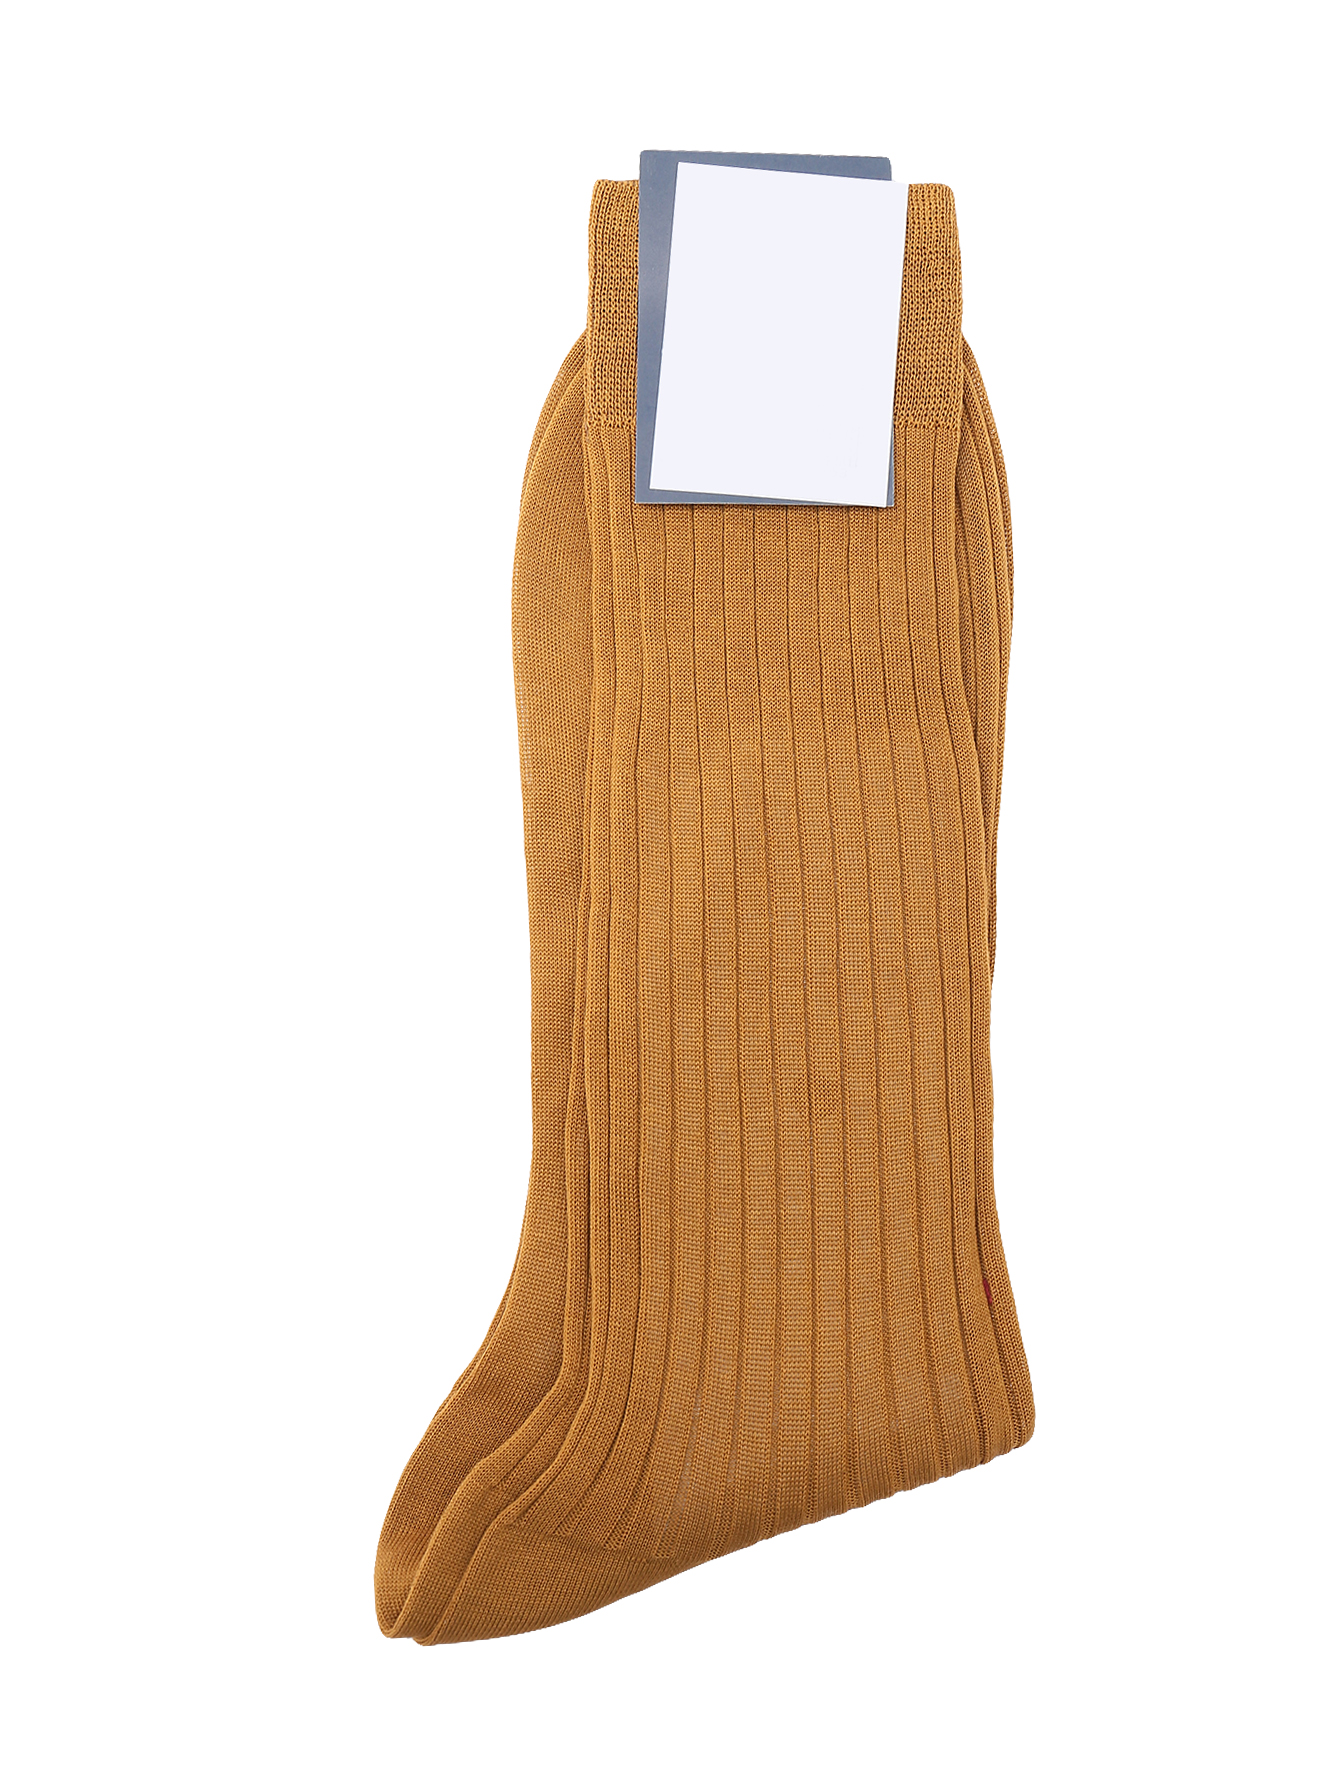 Носки из хлопка в крупный рубчик  - Общий вид